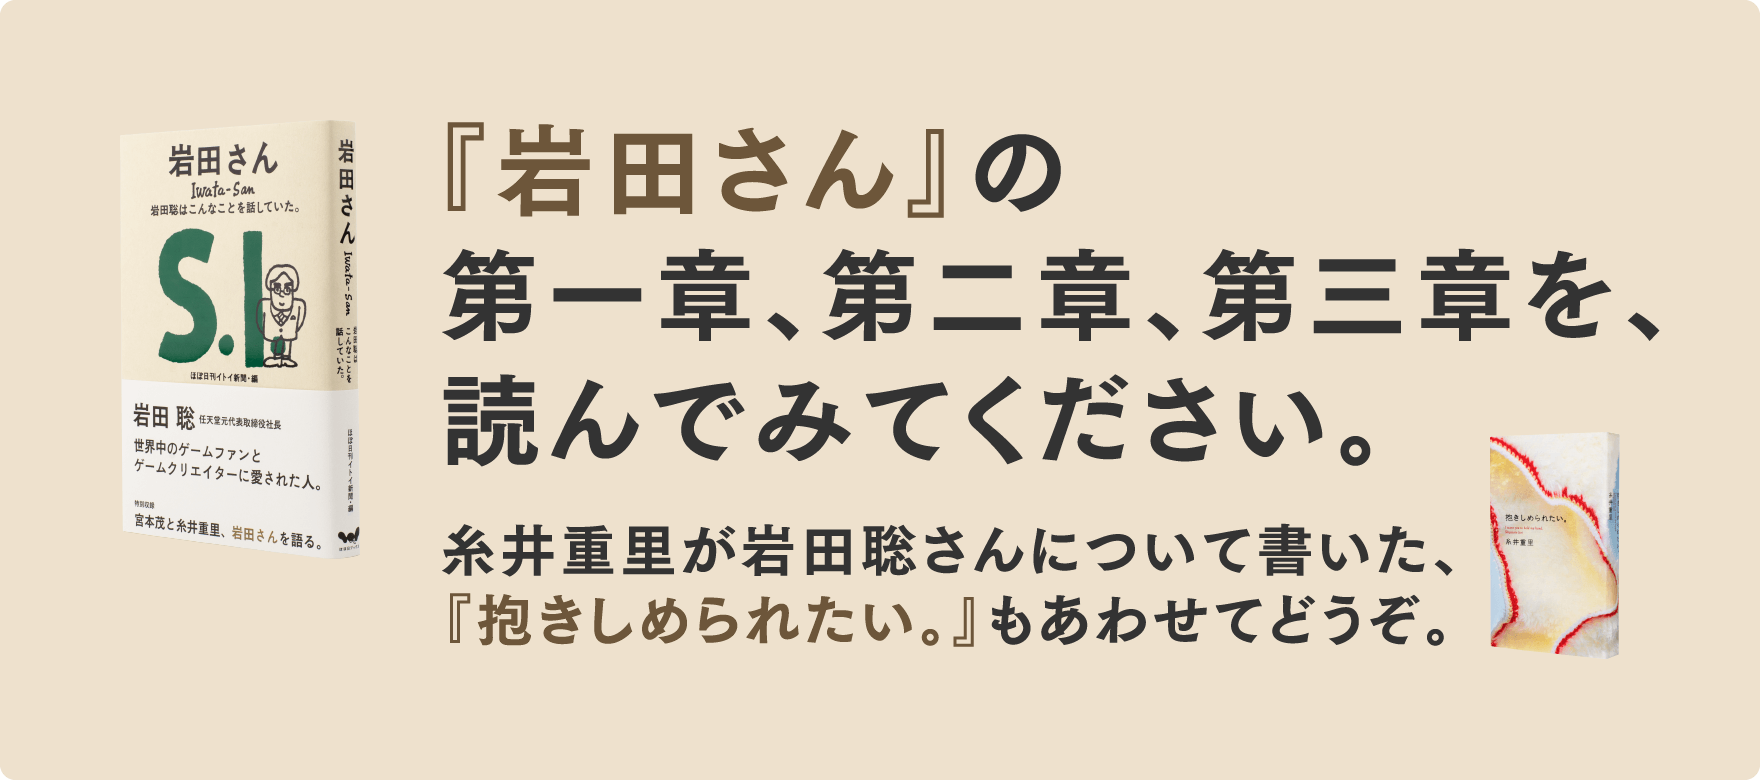 『岩田さん』の第一章、第二章、第三章を、読んでみてください。糸井重里が岩田聡さんについて書いた、『抱きしめられたい。』もあわせてどうぞ。